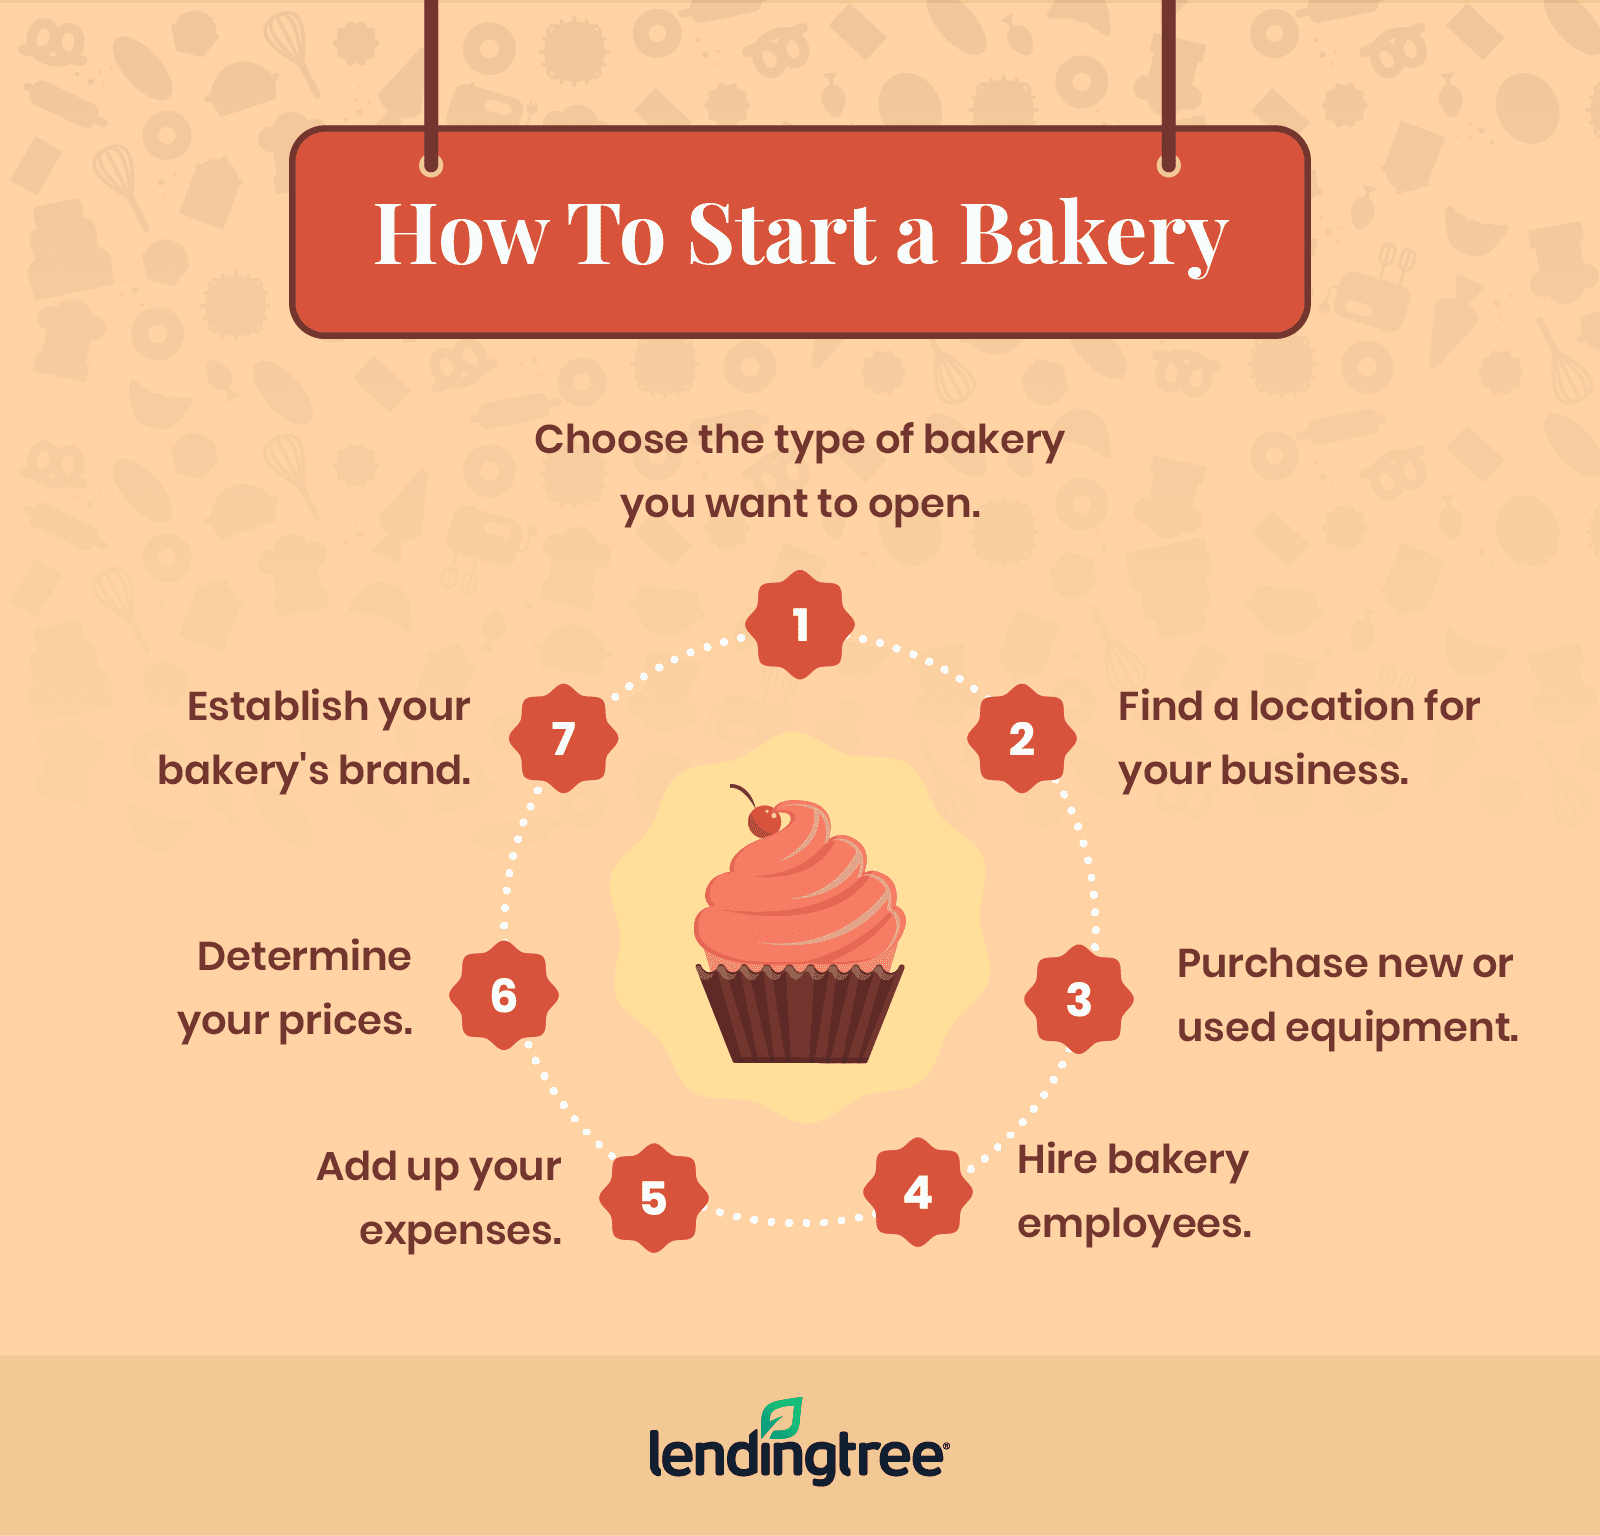 a baking business plan